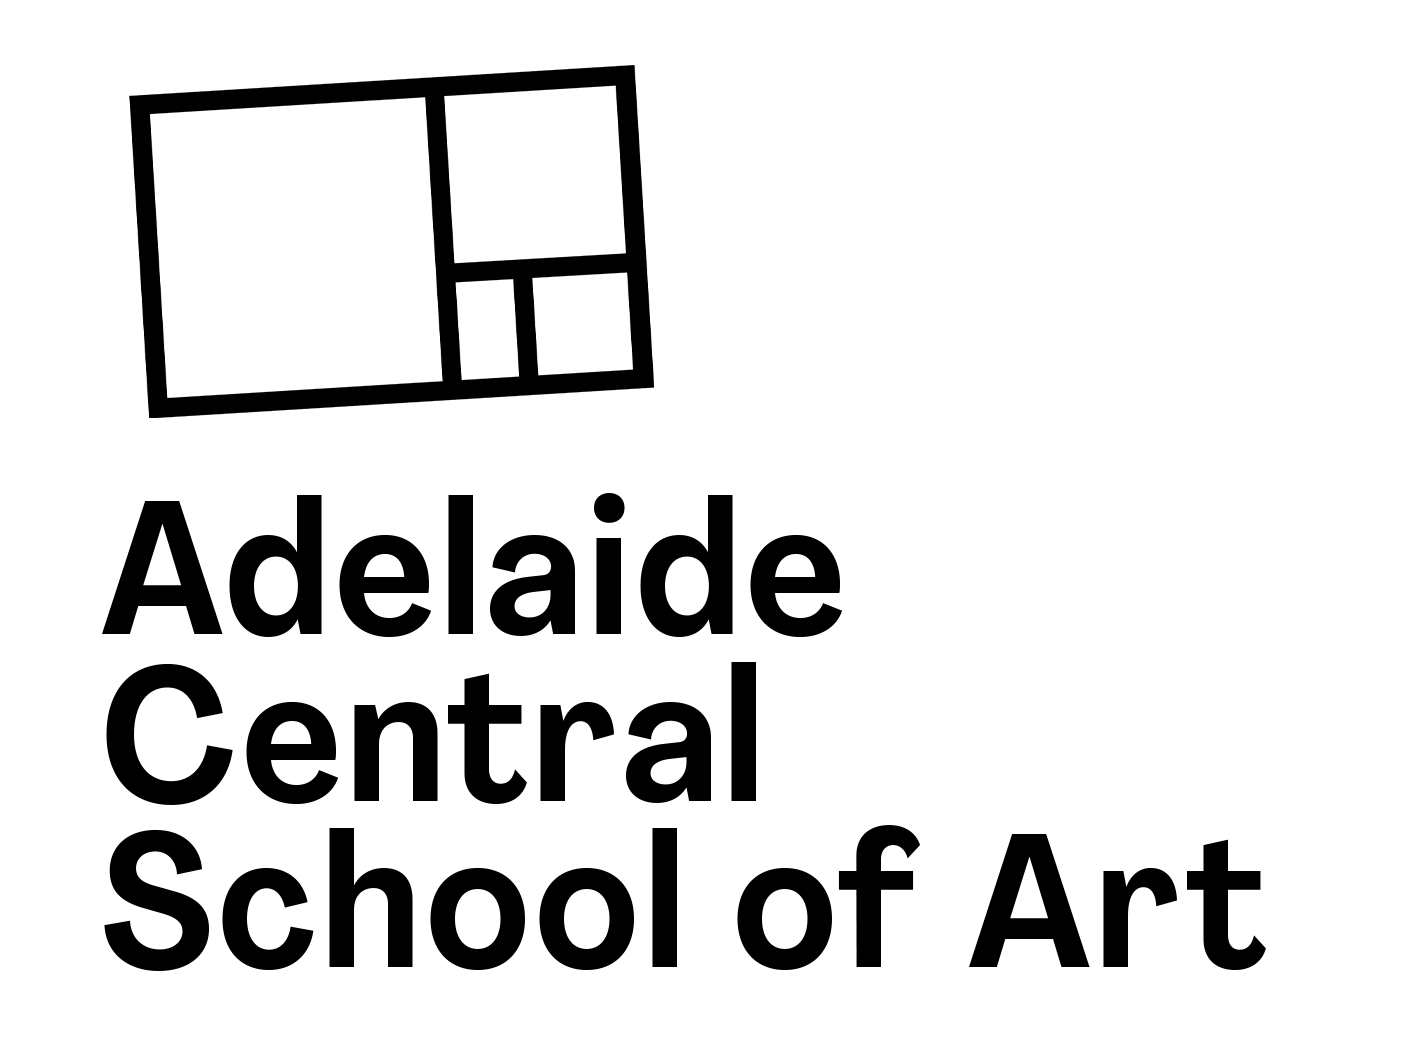 ACSA_Logo